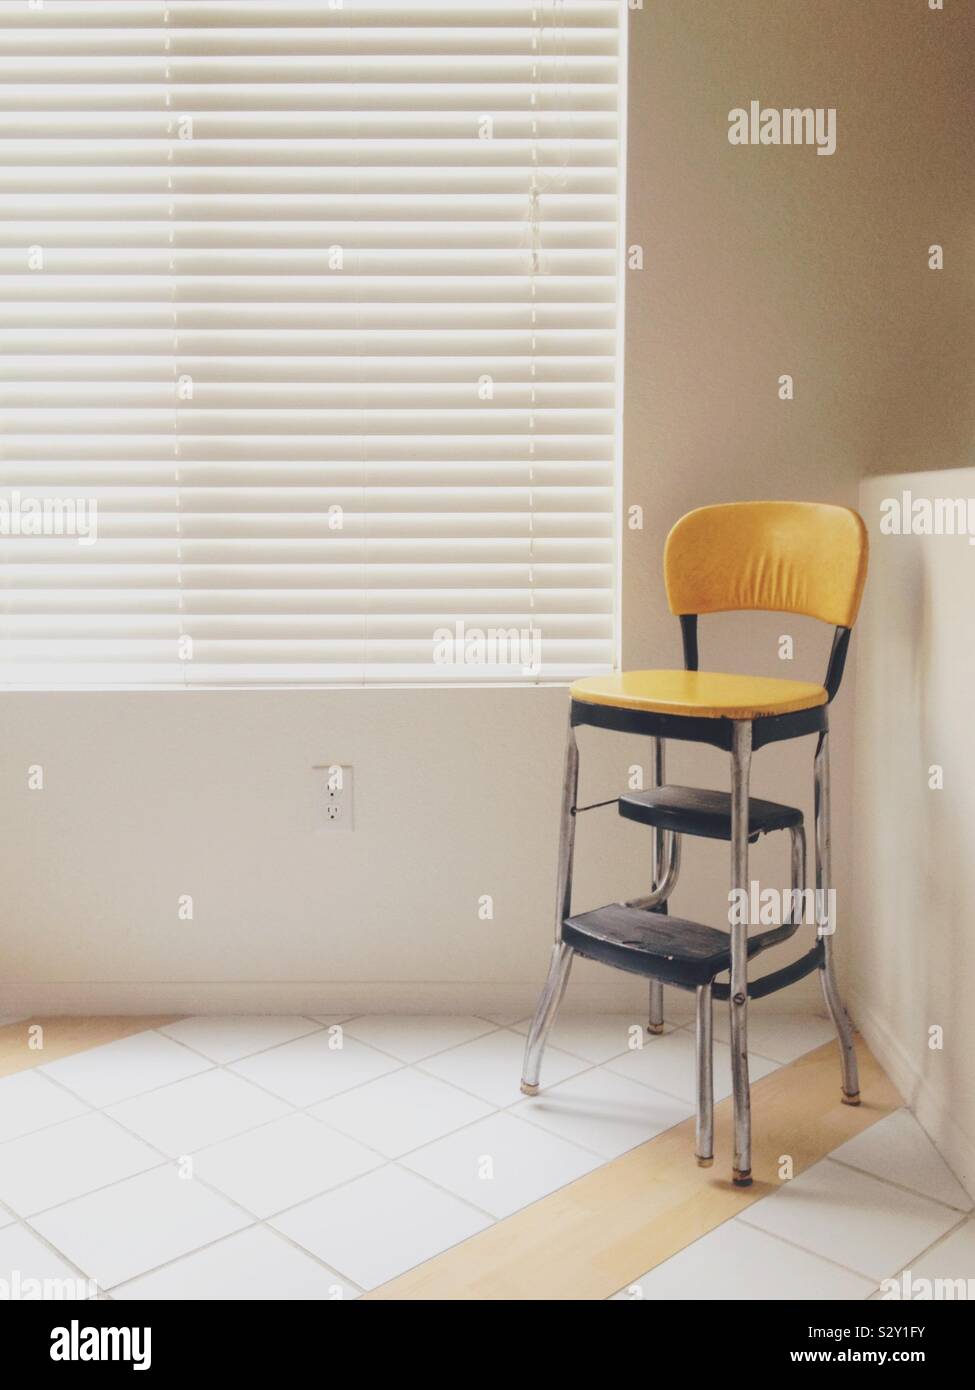 Gelb, vintage Stuhl in einer Ecke Stockfoto